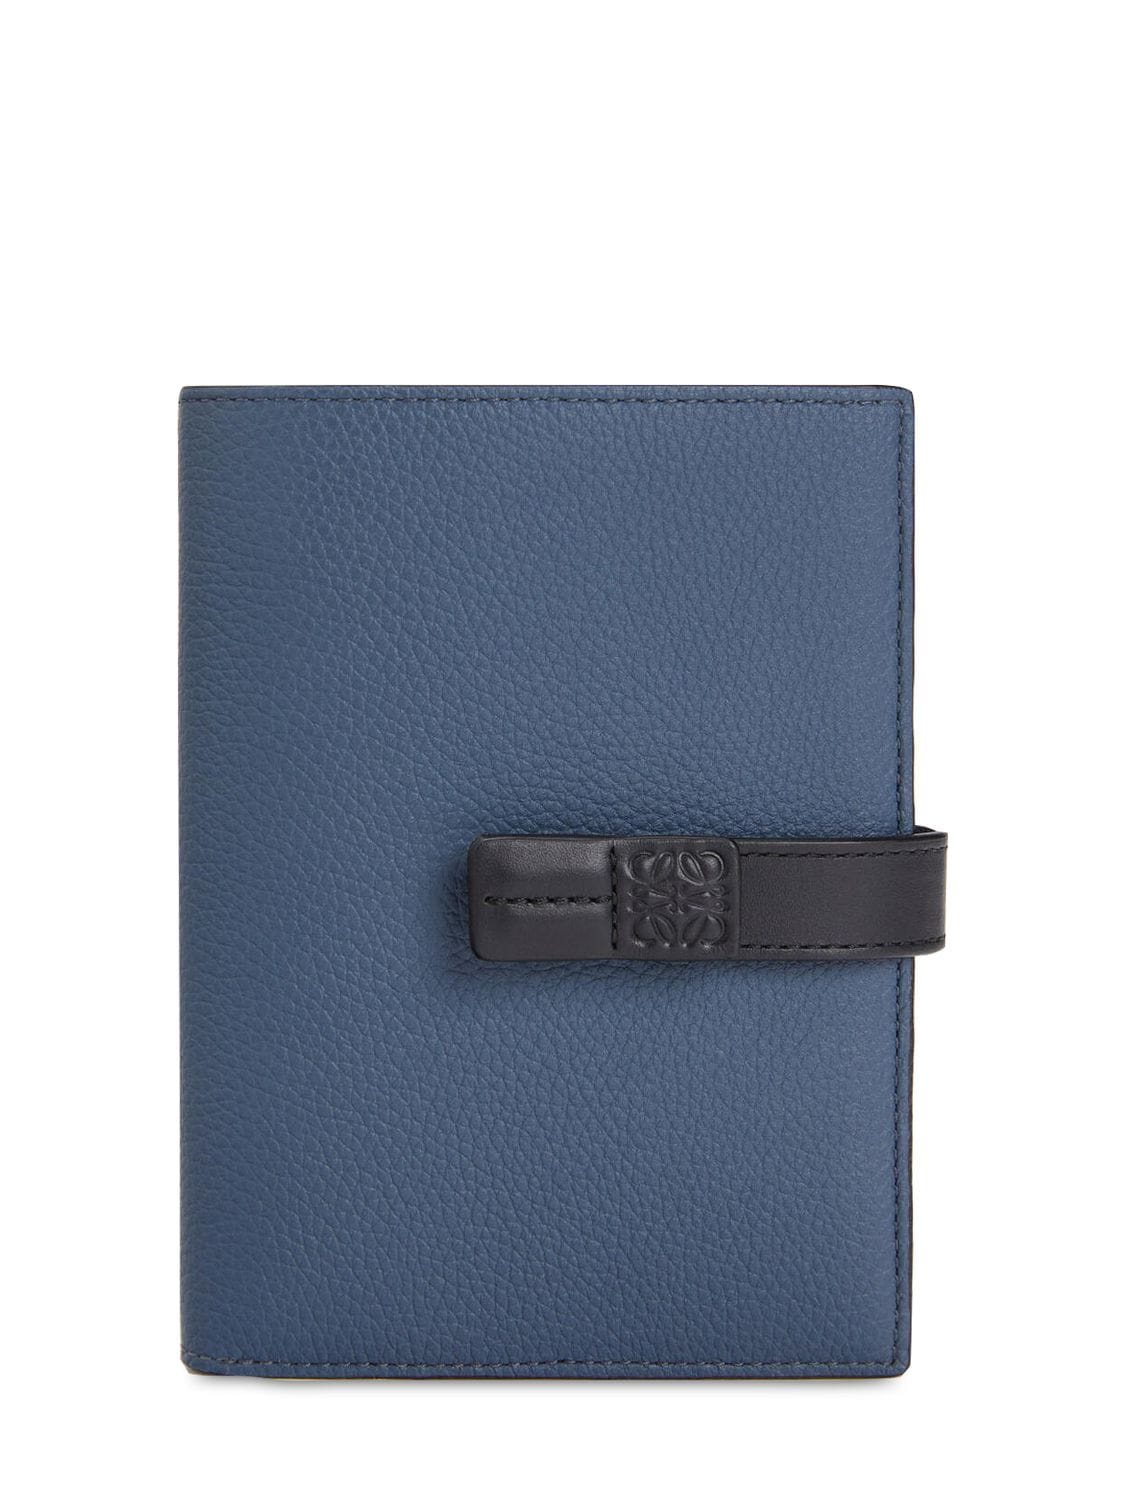 Loewe Medium Vertical Leather Wallet In Indigo Dye,blk